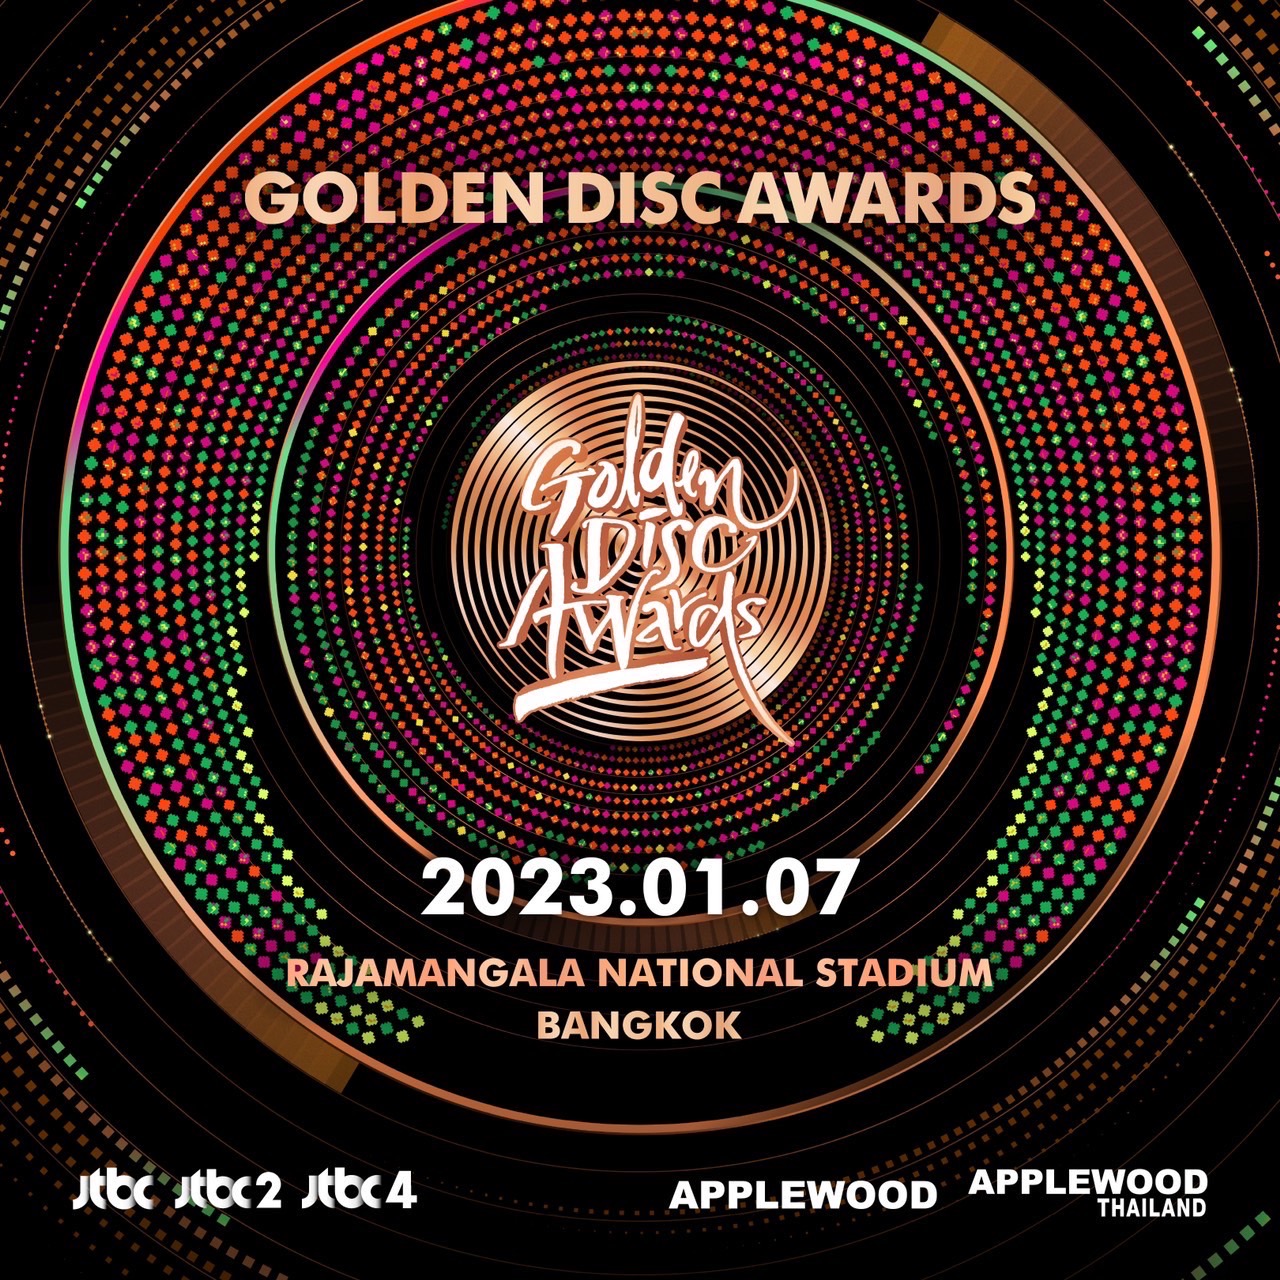 The 37th Golden Disc Awards in Bangkok 2023